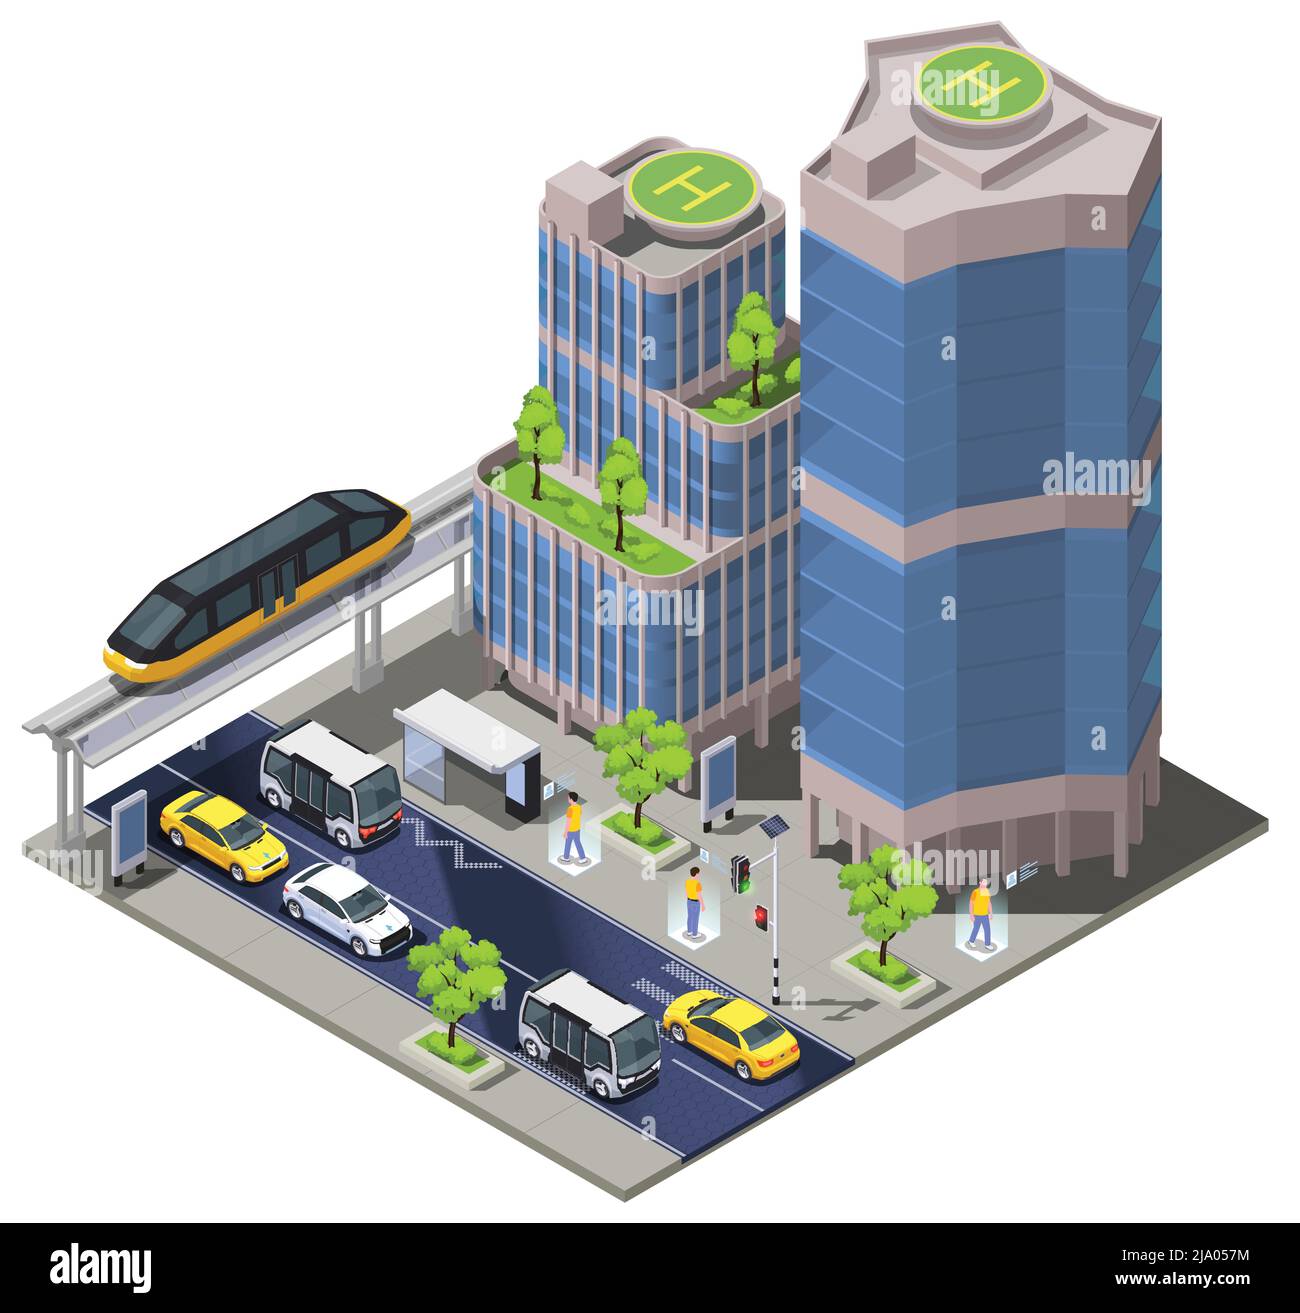 Smart City Technologien isometrische Zusammensetzung der Stadt Block Landschaft mit hohen Gebäuden entfernten Autos und Monorail Vektor Illustration Stock Vektor